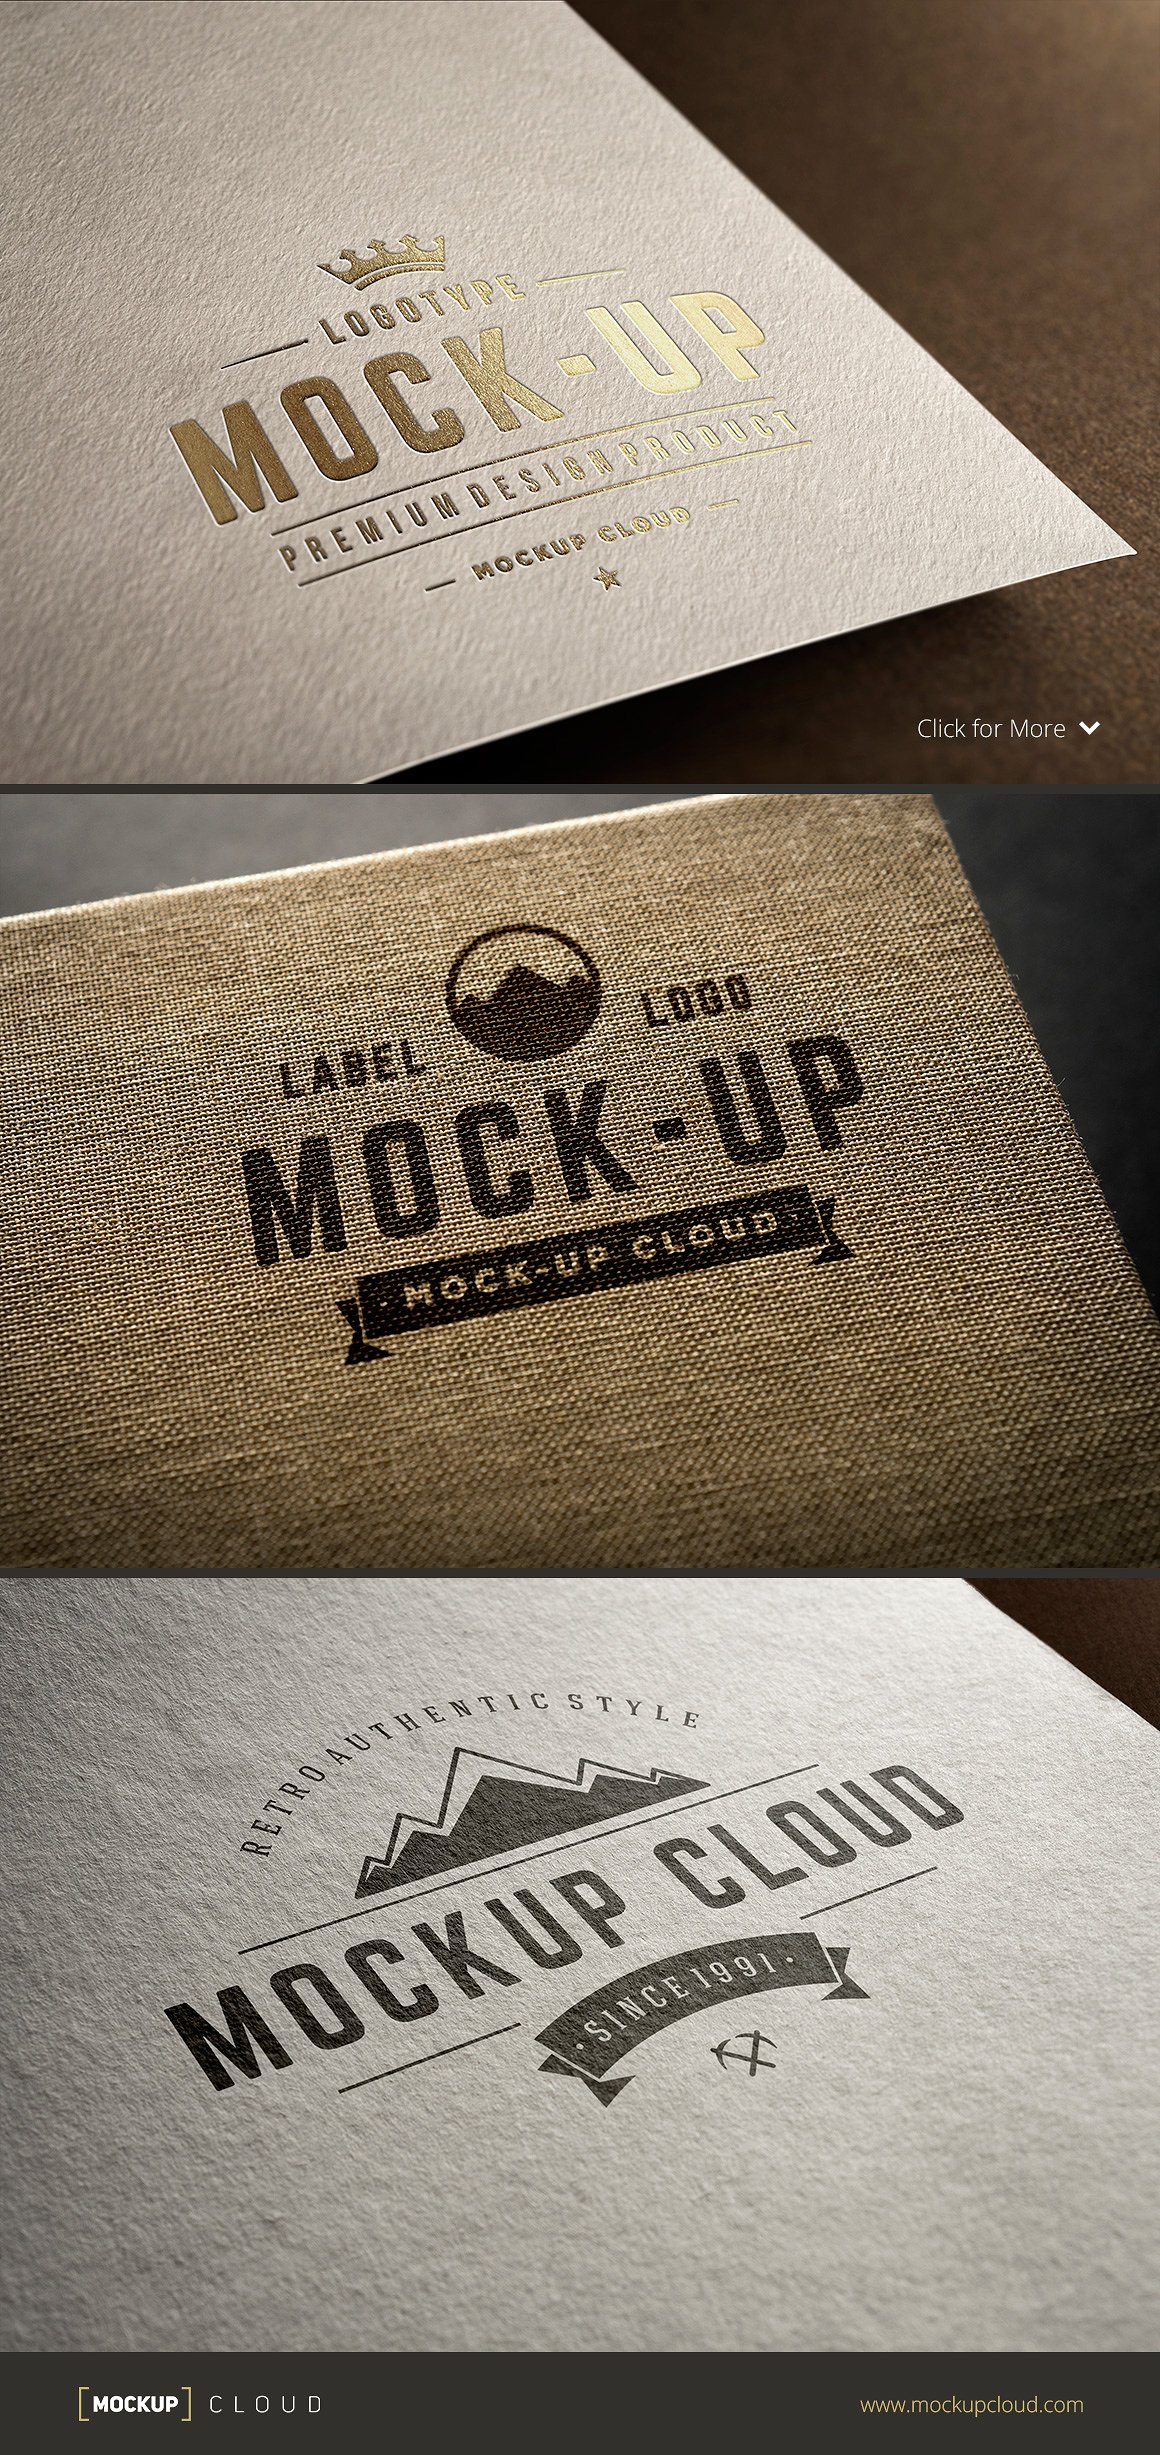 Logo设计纸张印刷展示样机 Logo Mock-Up Se